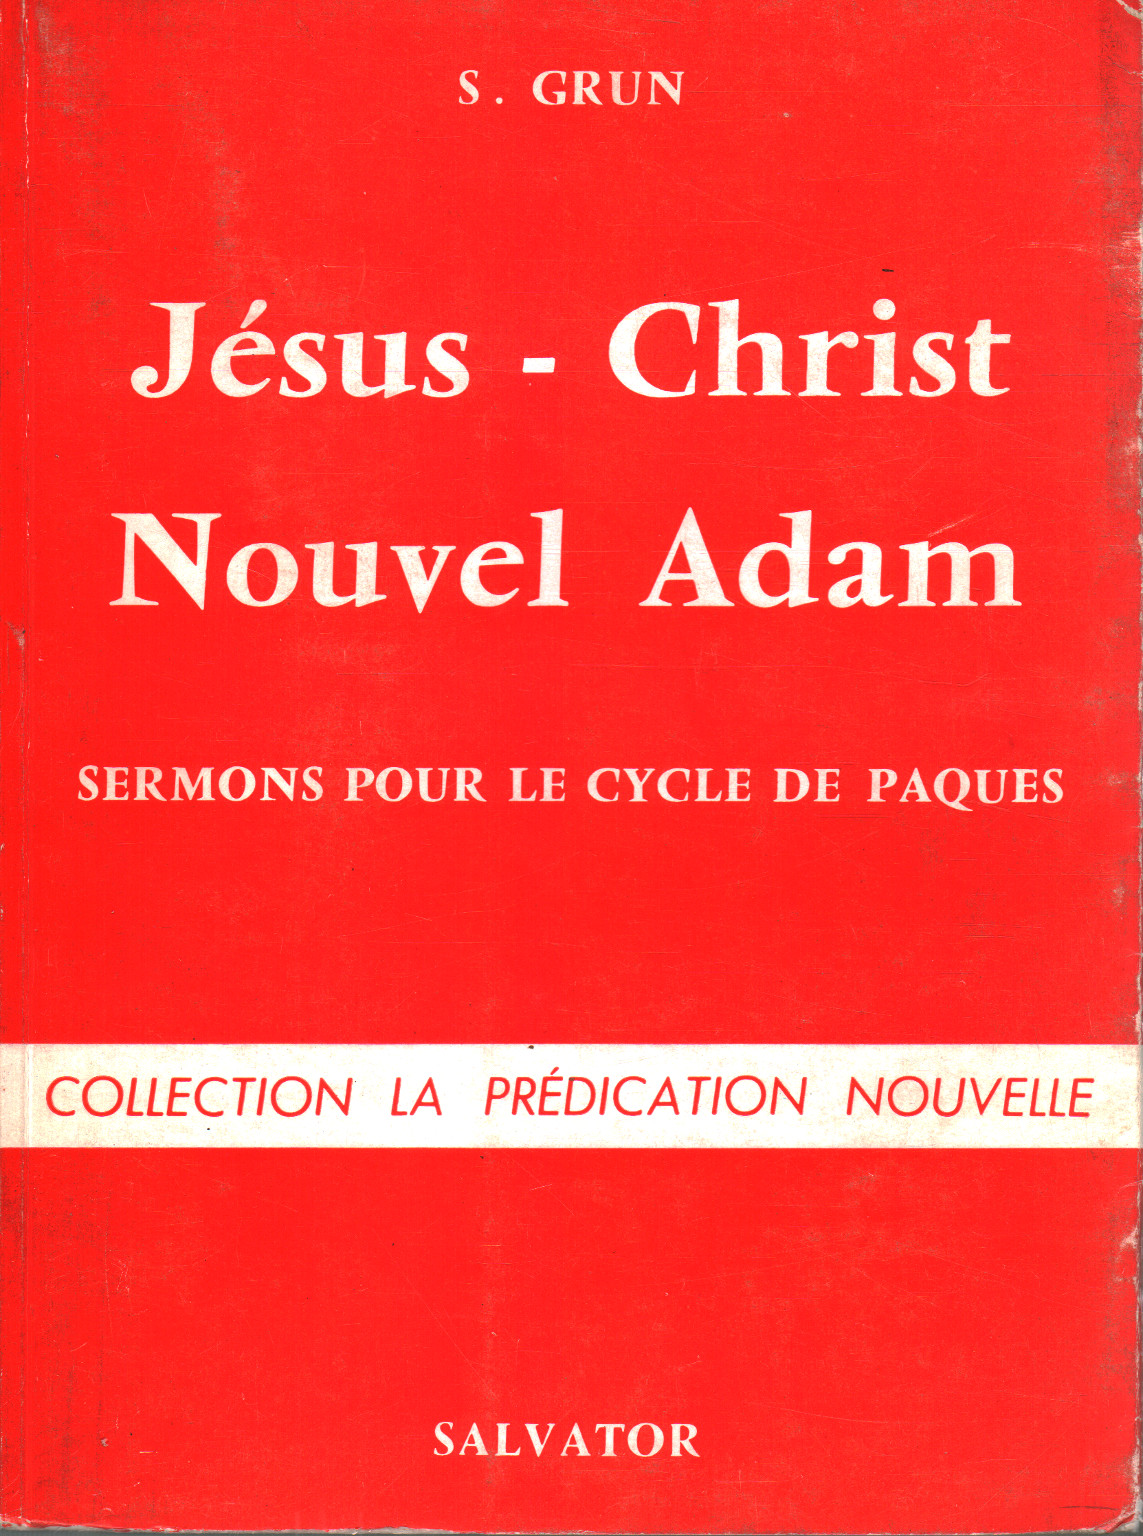 Jèsus- Christ, Nouvel Adam, s.a.